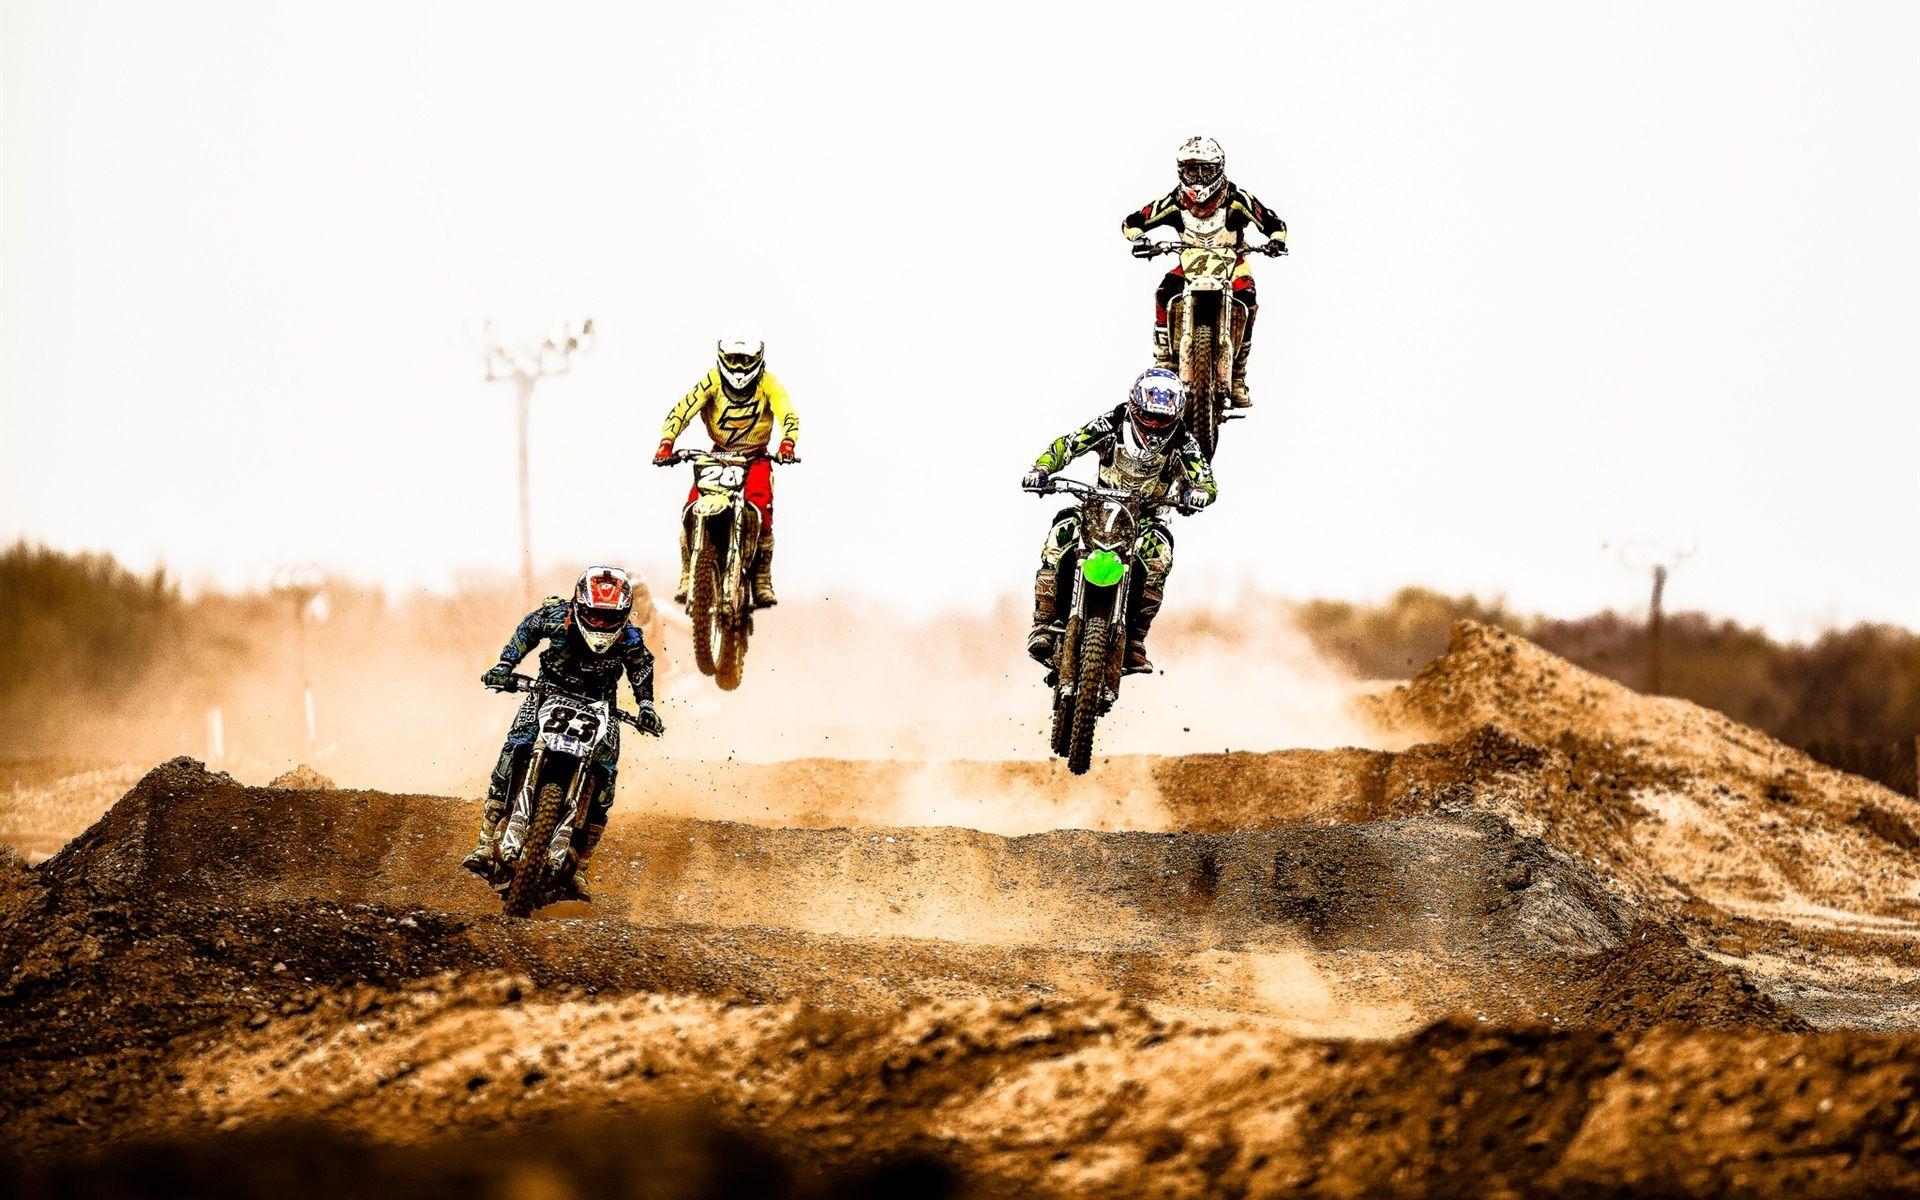 Motocross race, jump, dust, desert wallpaper. bikes and motorcycles